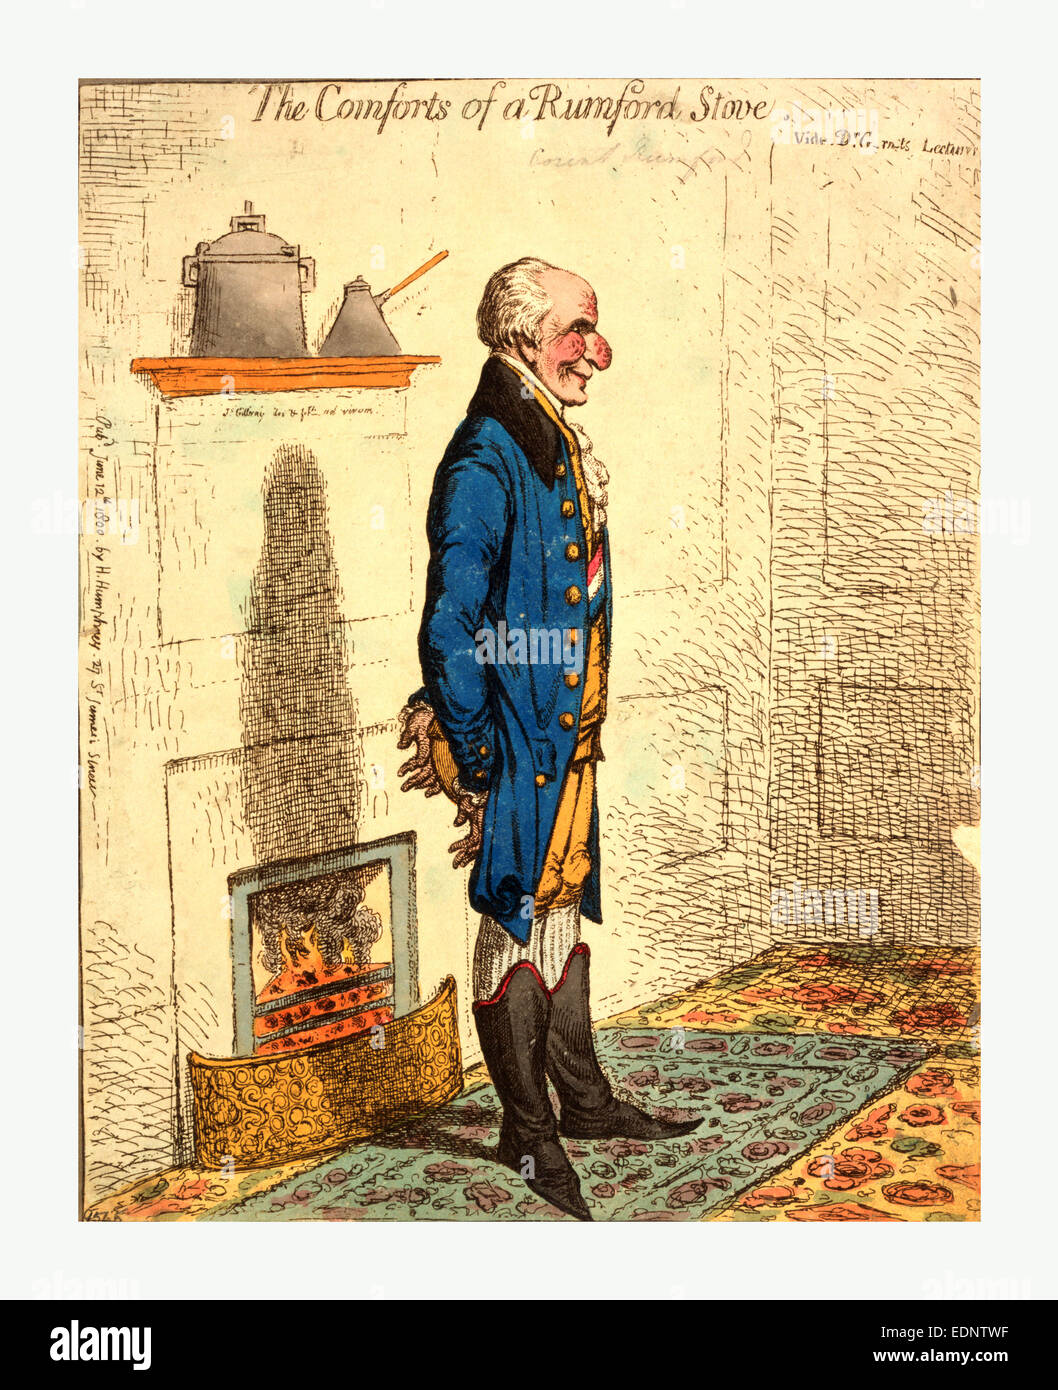 Den Komfort von einem Rumford Ofen Vide Dr. G-Rn-ts Vorträge / Gillray, James, 1756-1815, Gravieren 1800, in voller Länge anzeigen Stockfoto